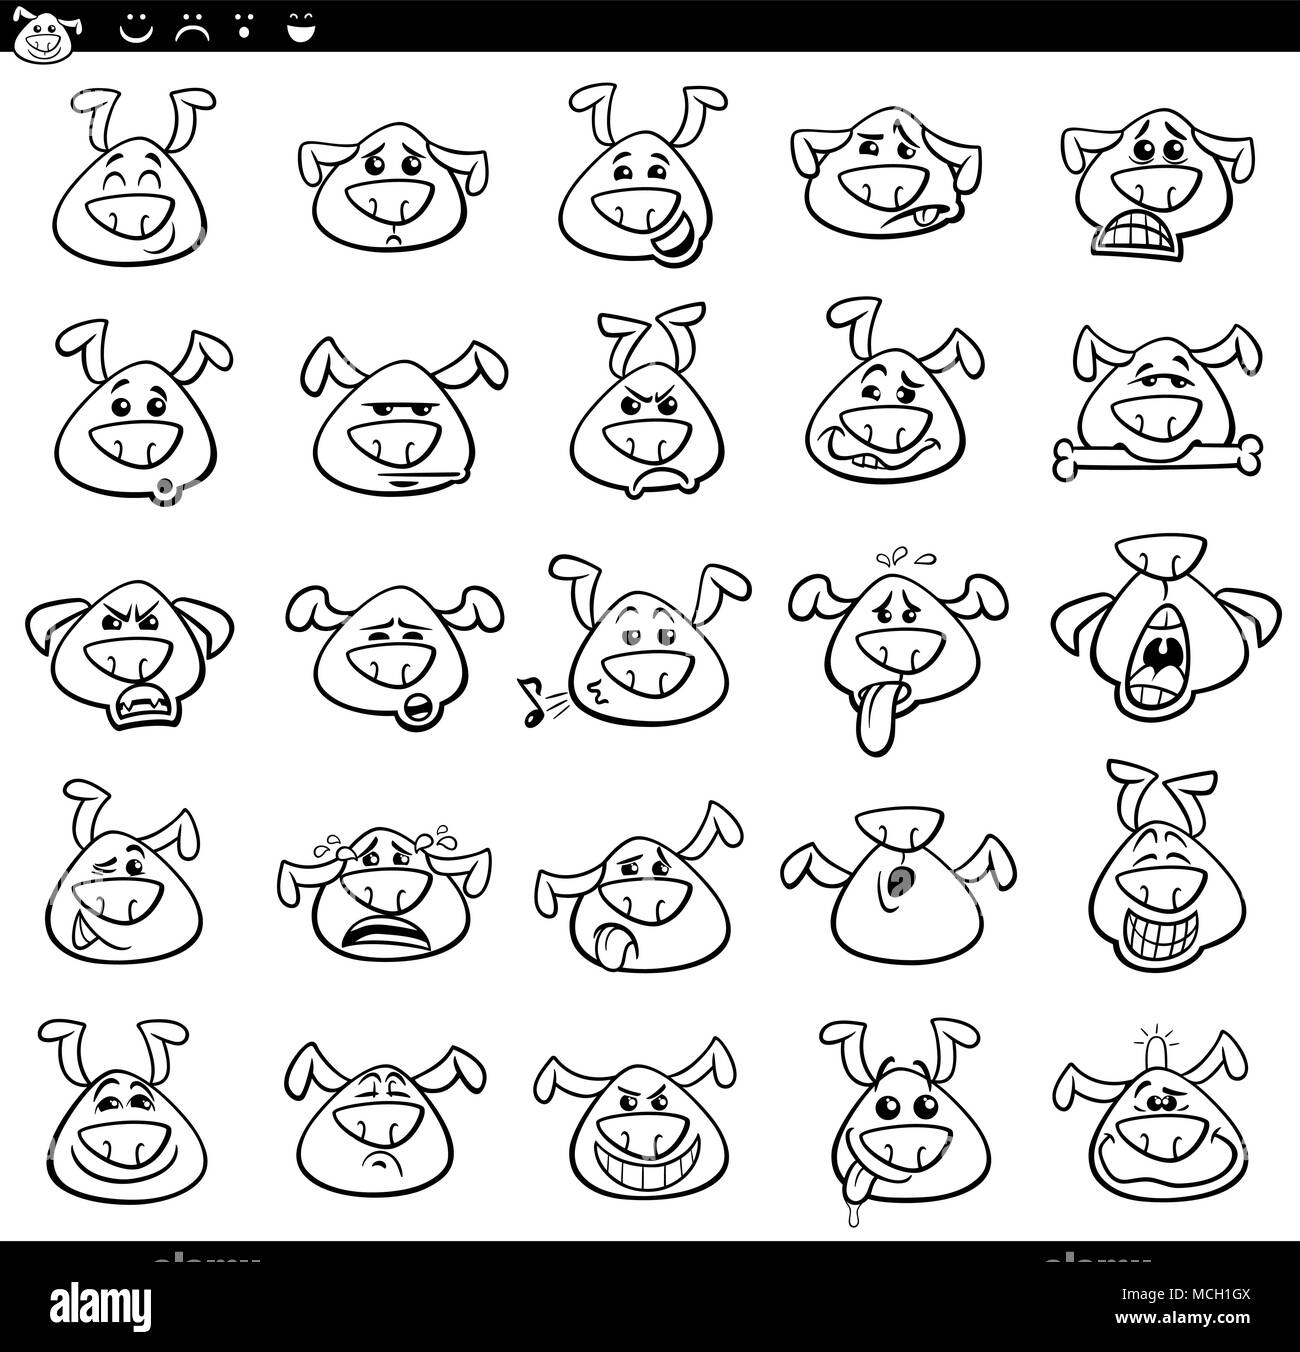 Schwarze und Weiße Cartoon Illustration der Lustige Hunde den Ausdruck von  Emotionen oder Emoji Icons einstellen Stock-Vektorgrafik - Alamy